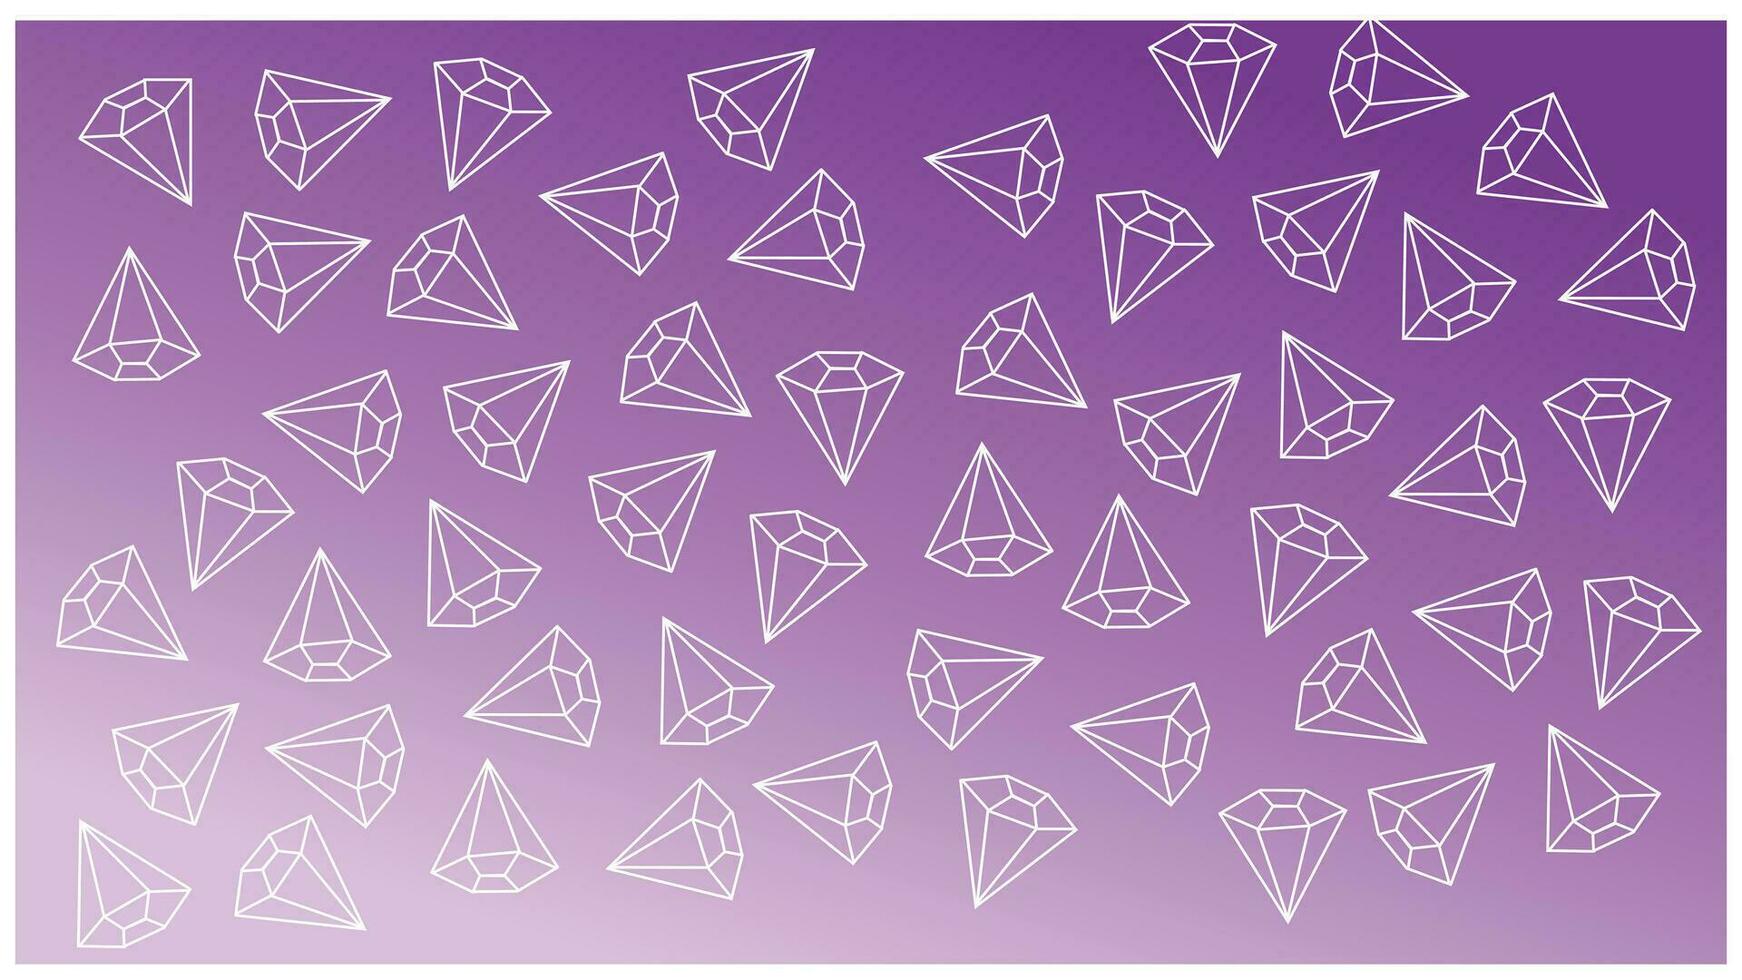 Purper helling achtergrond met een regelmatig patroon van diamanten. vector illustratie voor uw ontwerp. zacht gevormde achtergrond is glad en strak